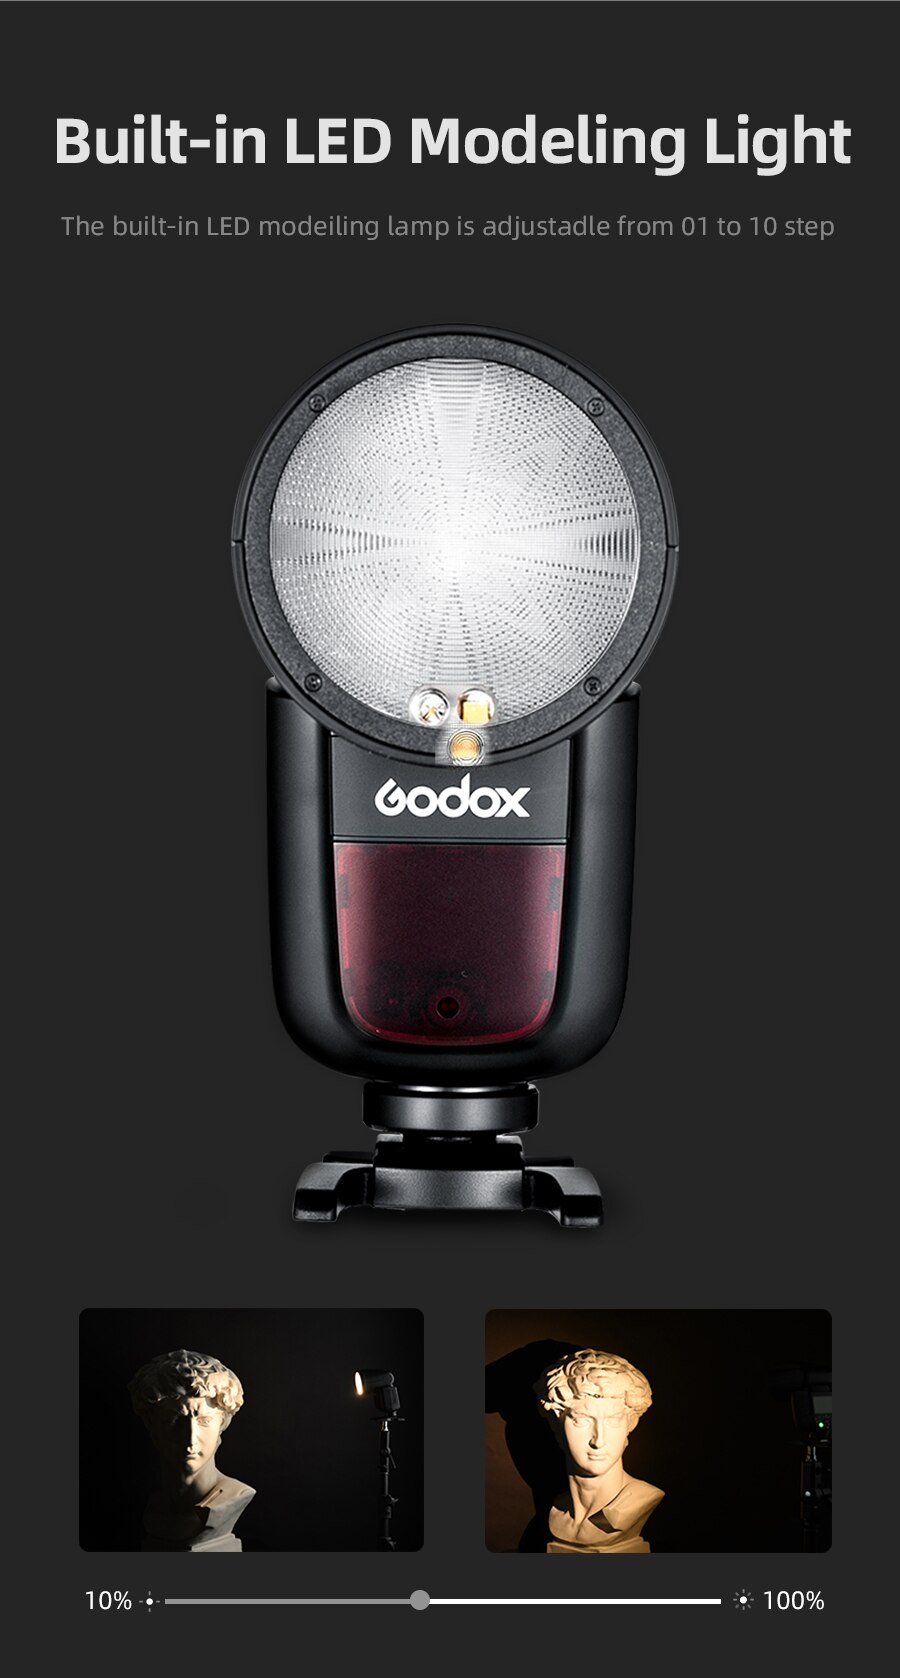 Godox V1 flash speedlight